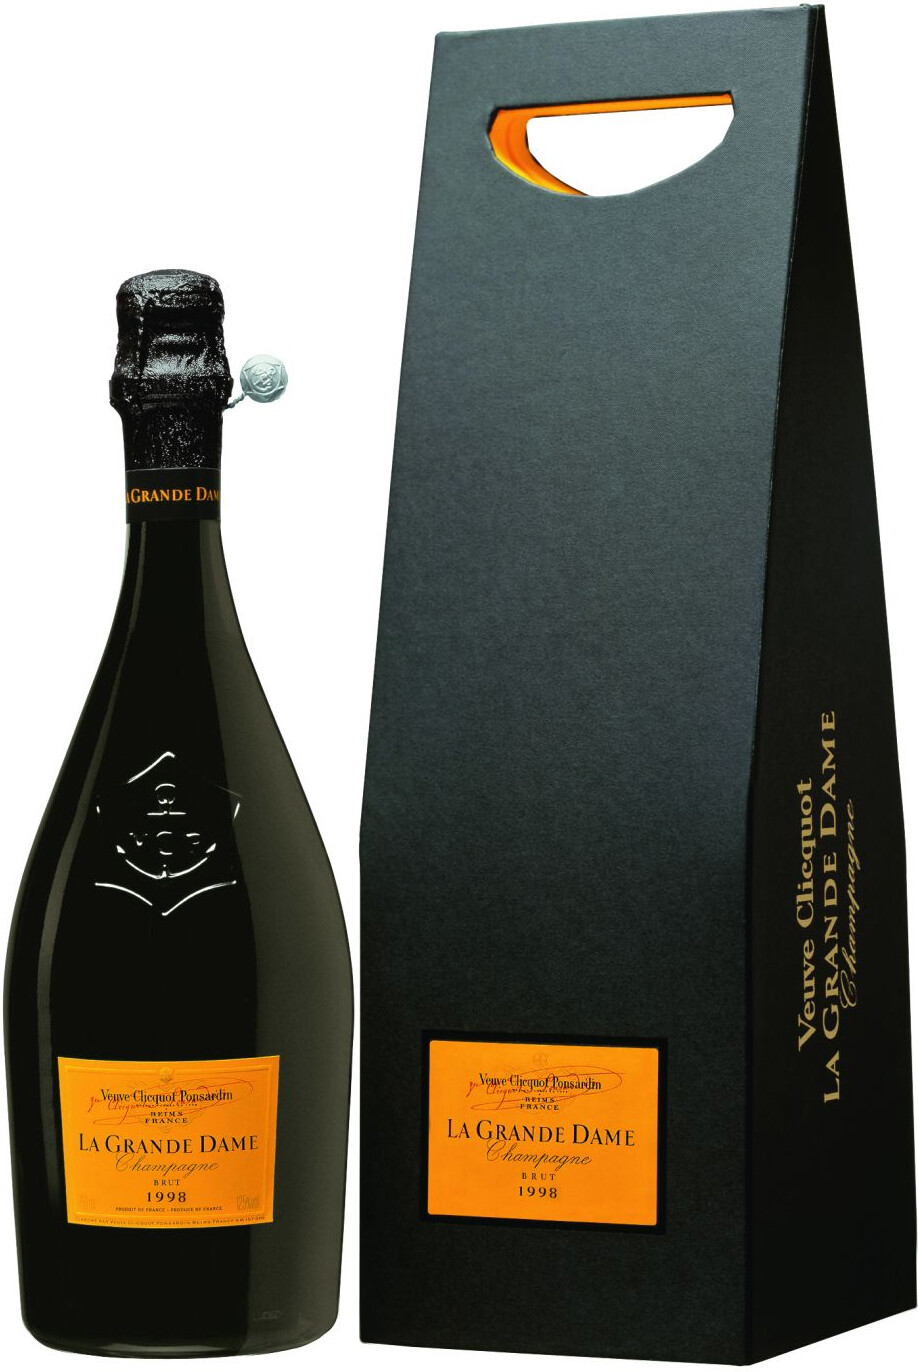 Where to buy Veuve Clicquot Ponsardin La Grande Dame Brut, Champagne,  France